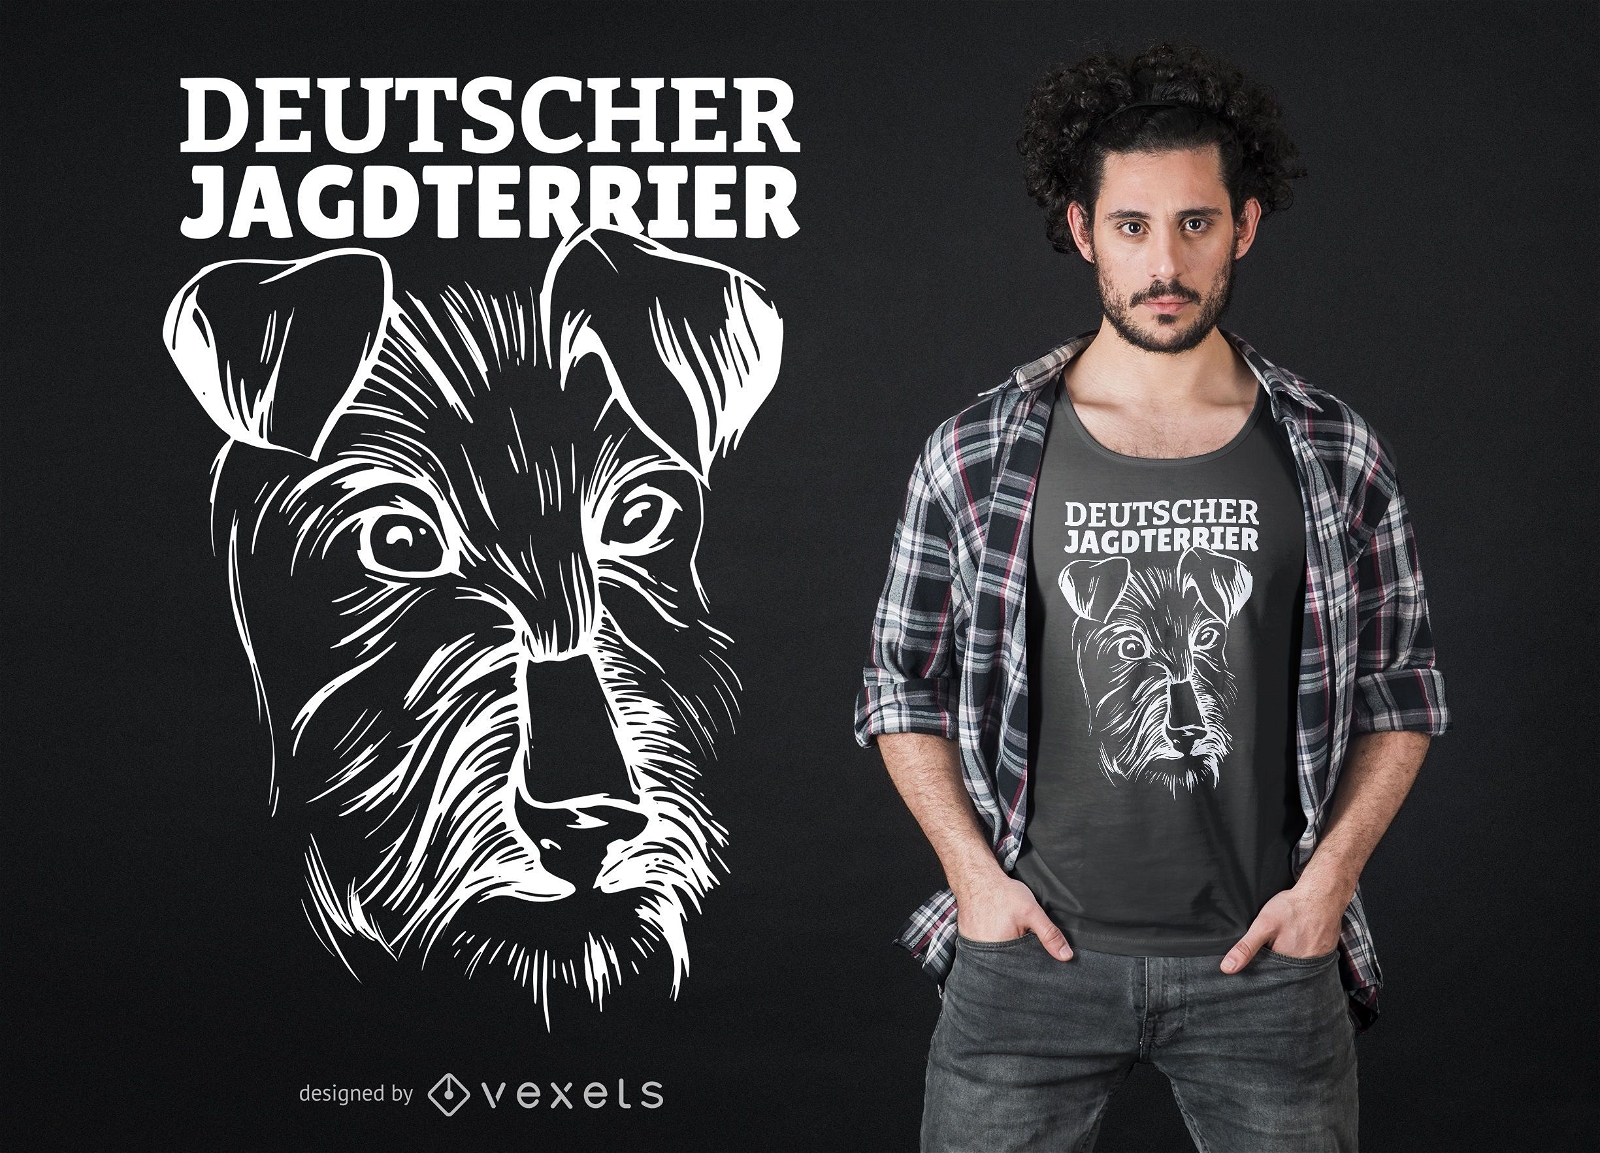 Dise?o de camiseta Deutscher Jagdterrier